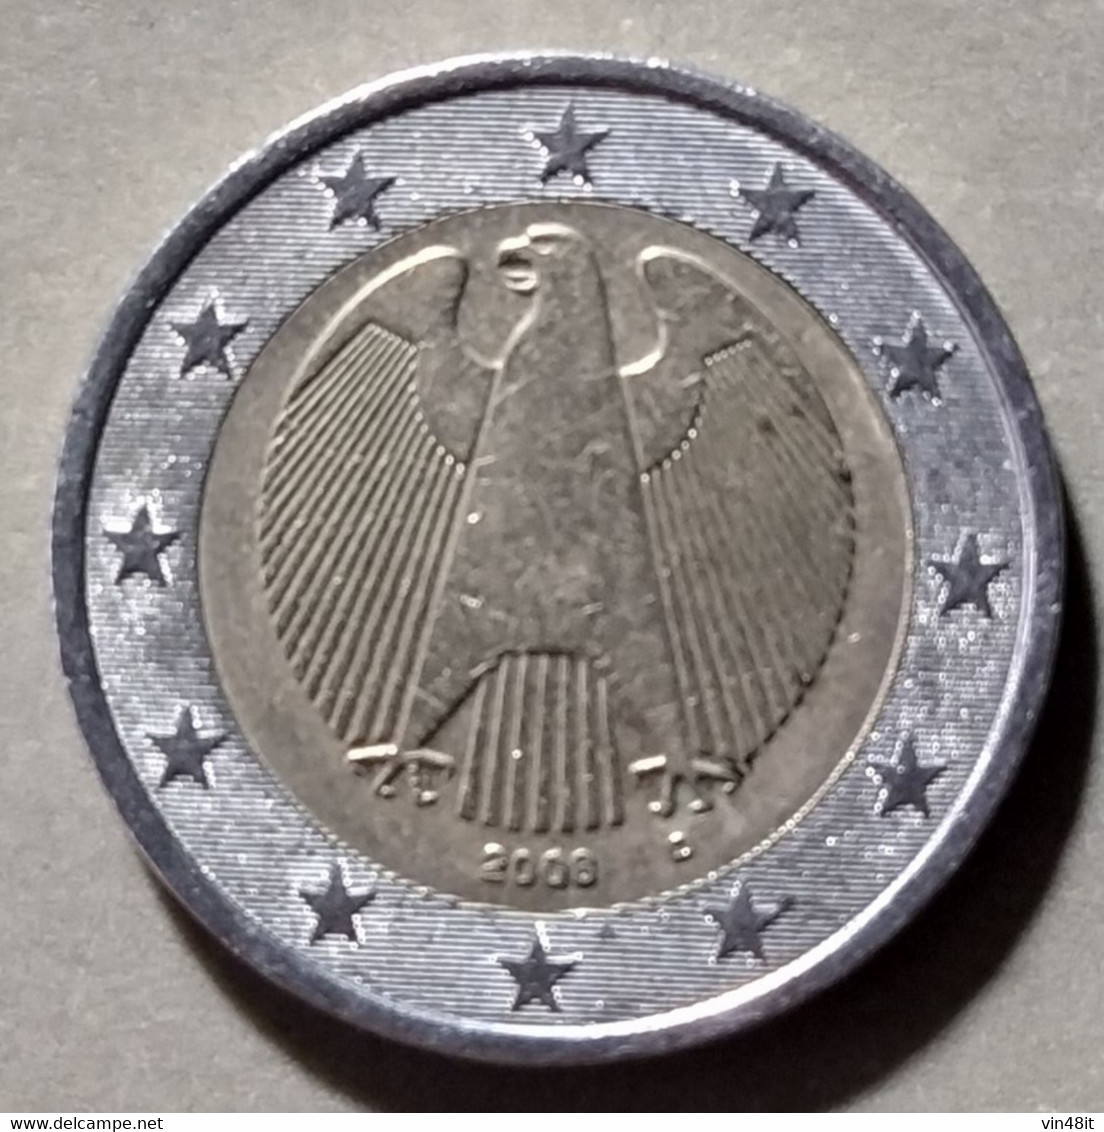 2008   - GERMANIA   - MONETA IN EURO  - DEL VALORE DI  2,00 EURO - USATA - Allemagne